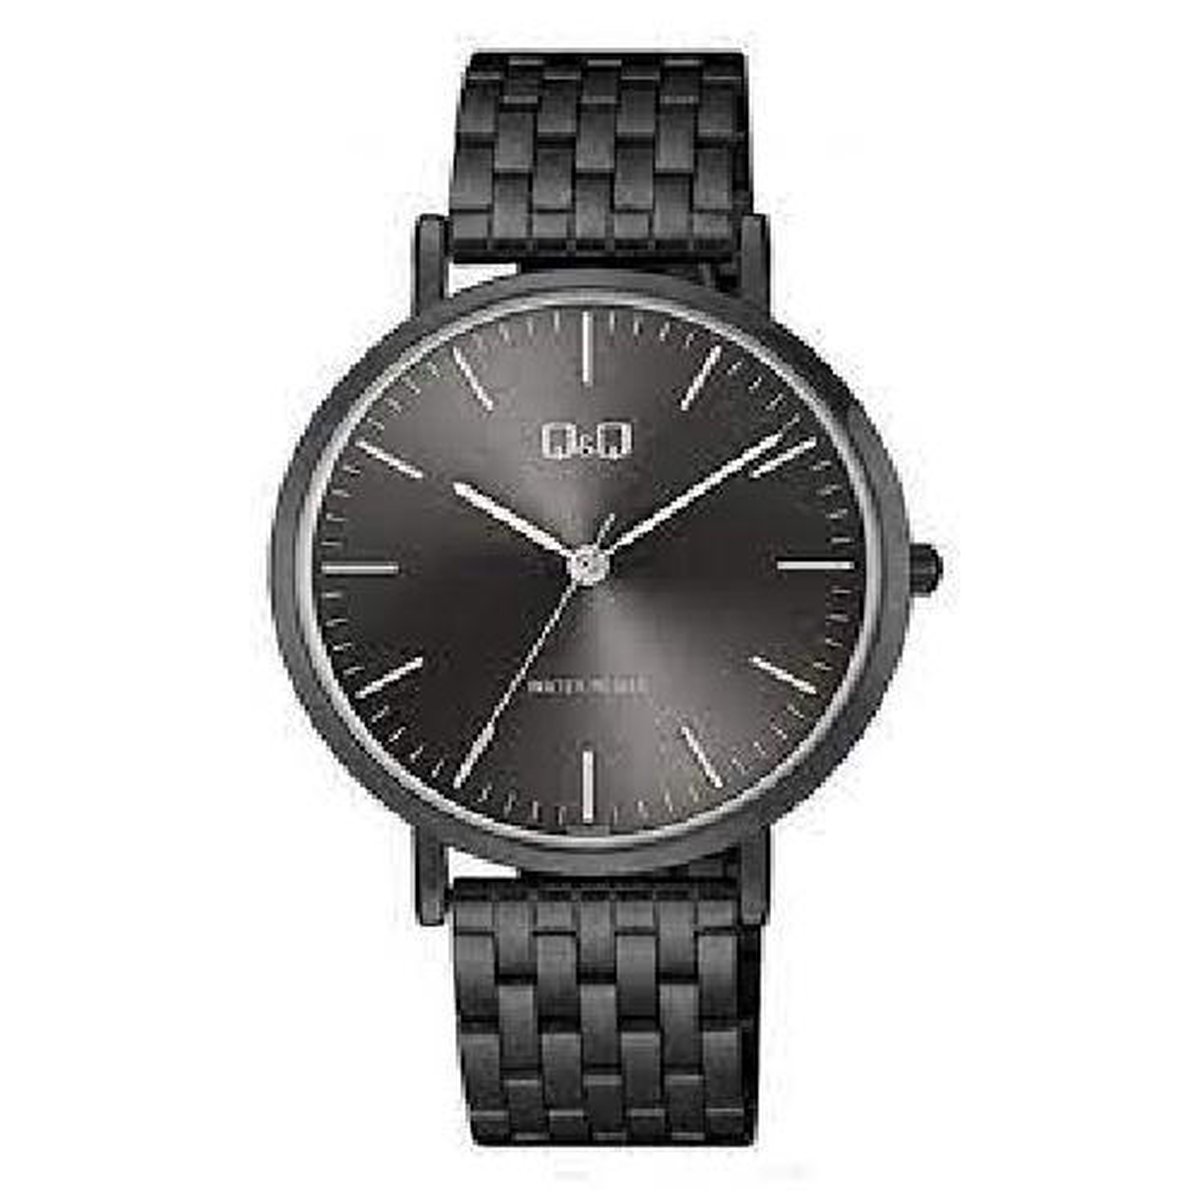 QQ model QA20j432y prachtig zwart herenhorloge met mooie schakelband en duidelijke wijzerplaat 3atm waterdicht